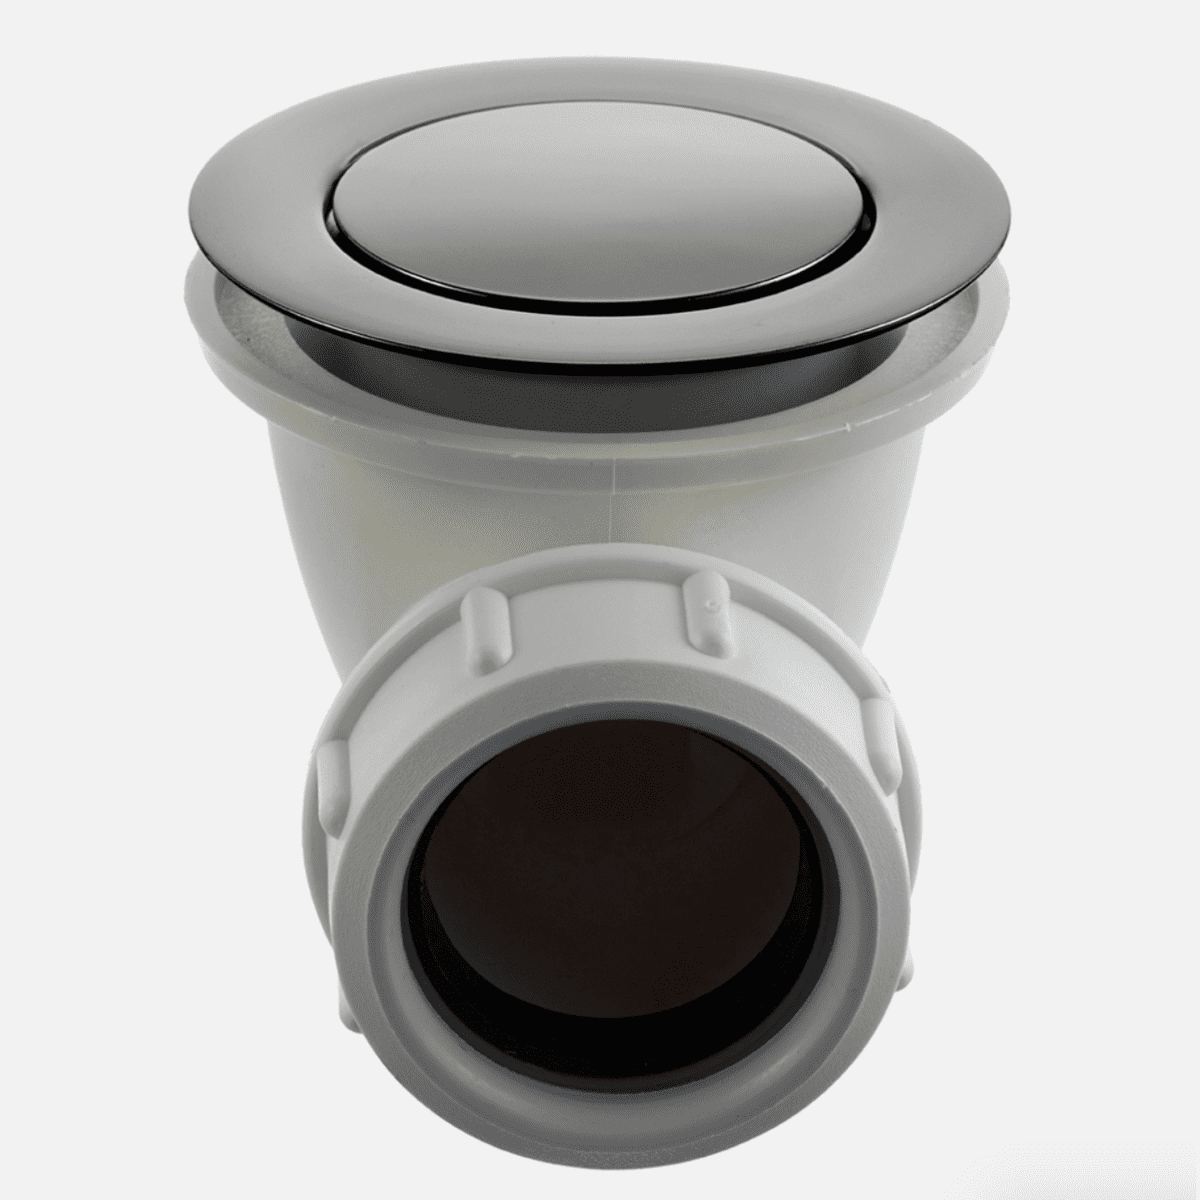 Se Tapwell 22200 pop-up bundventil til badekar - black chrome hos Bad&Design